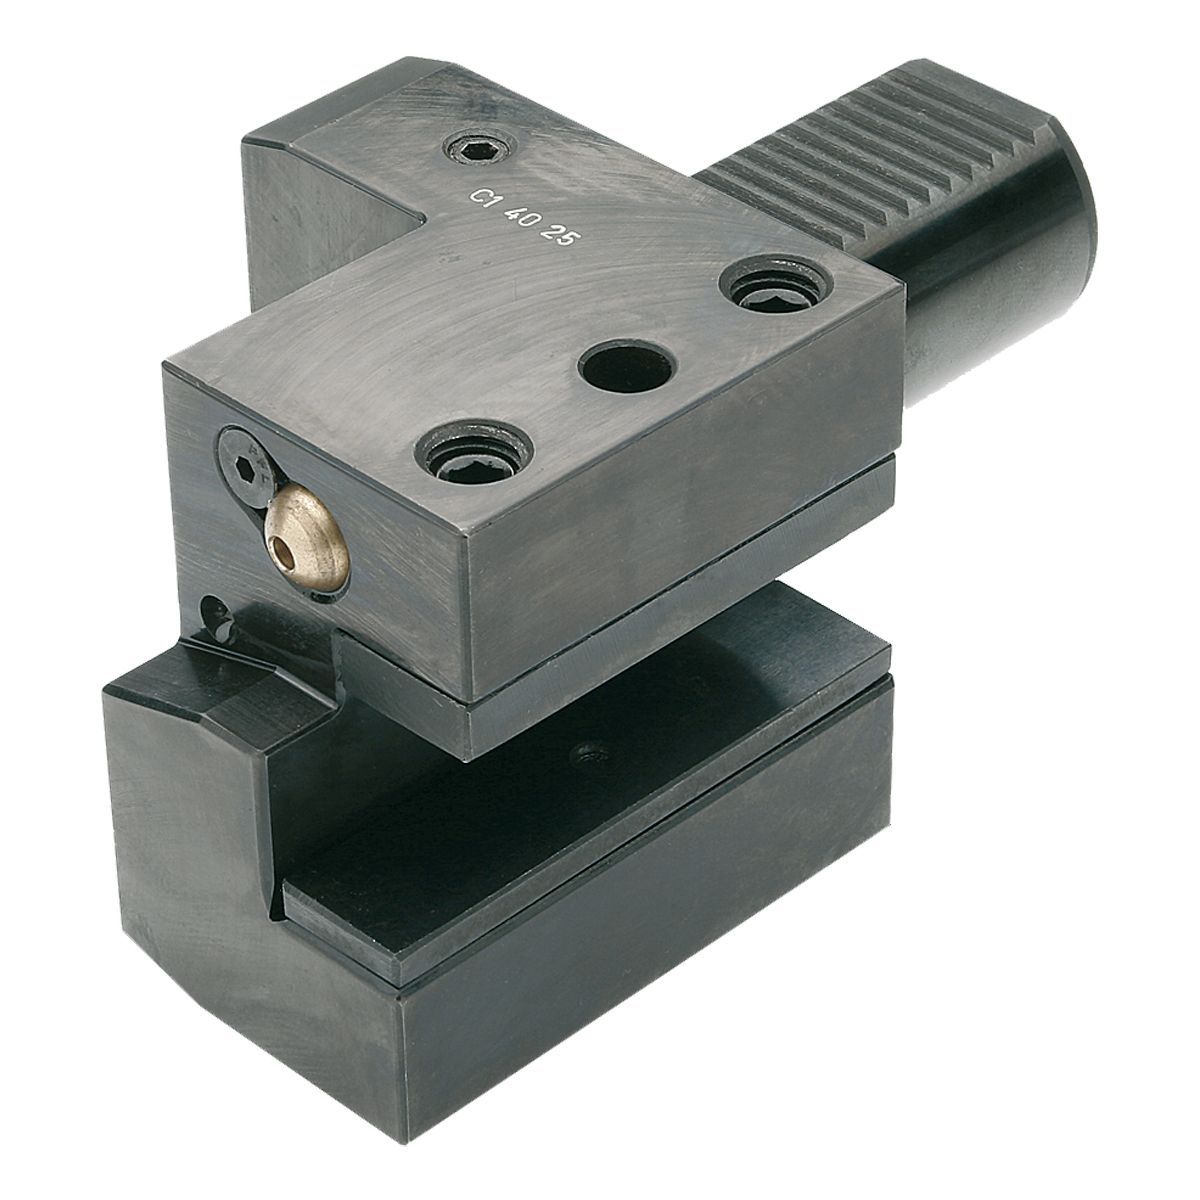 Axial-Werkzeughalter C1-20x16 DIN 69880 (ISO 10889)